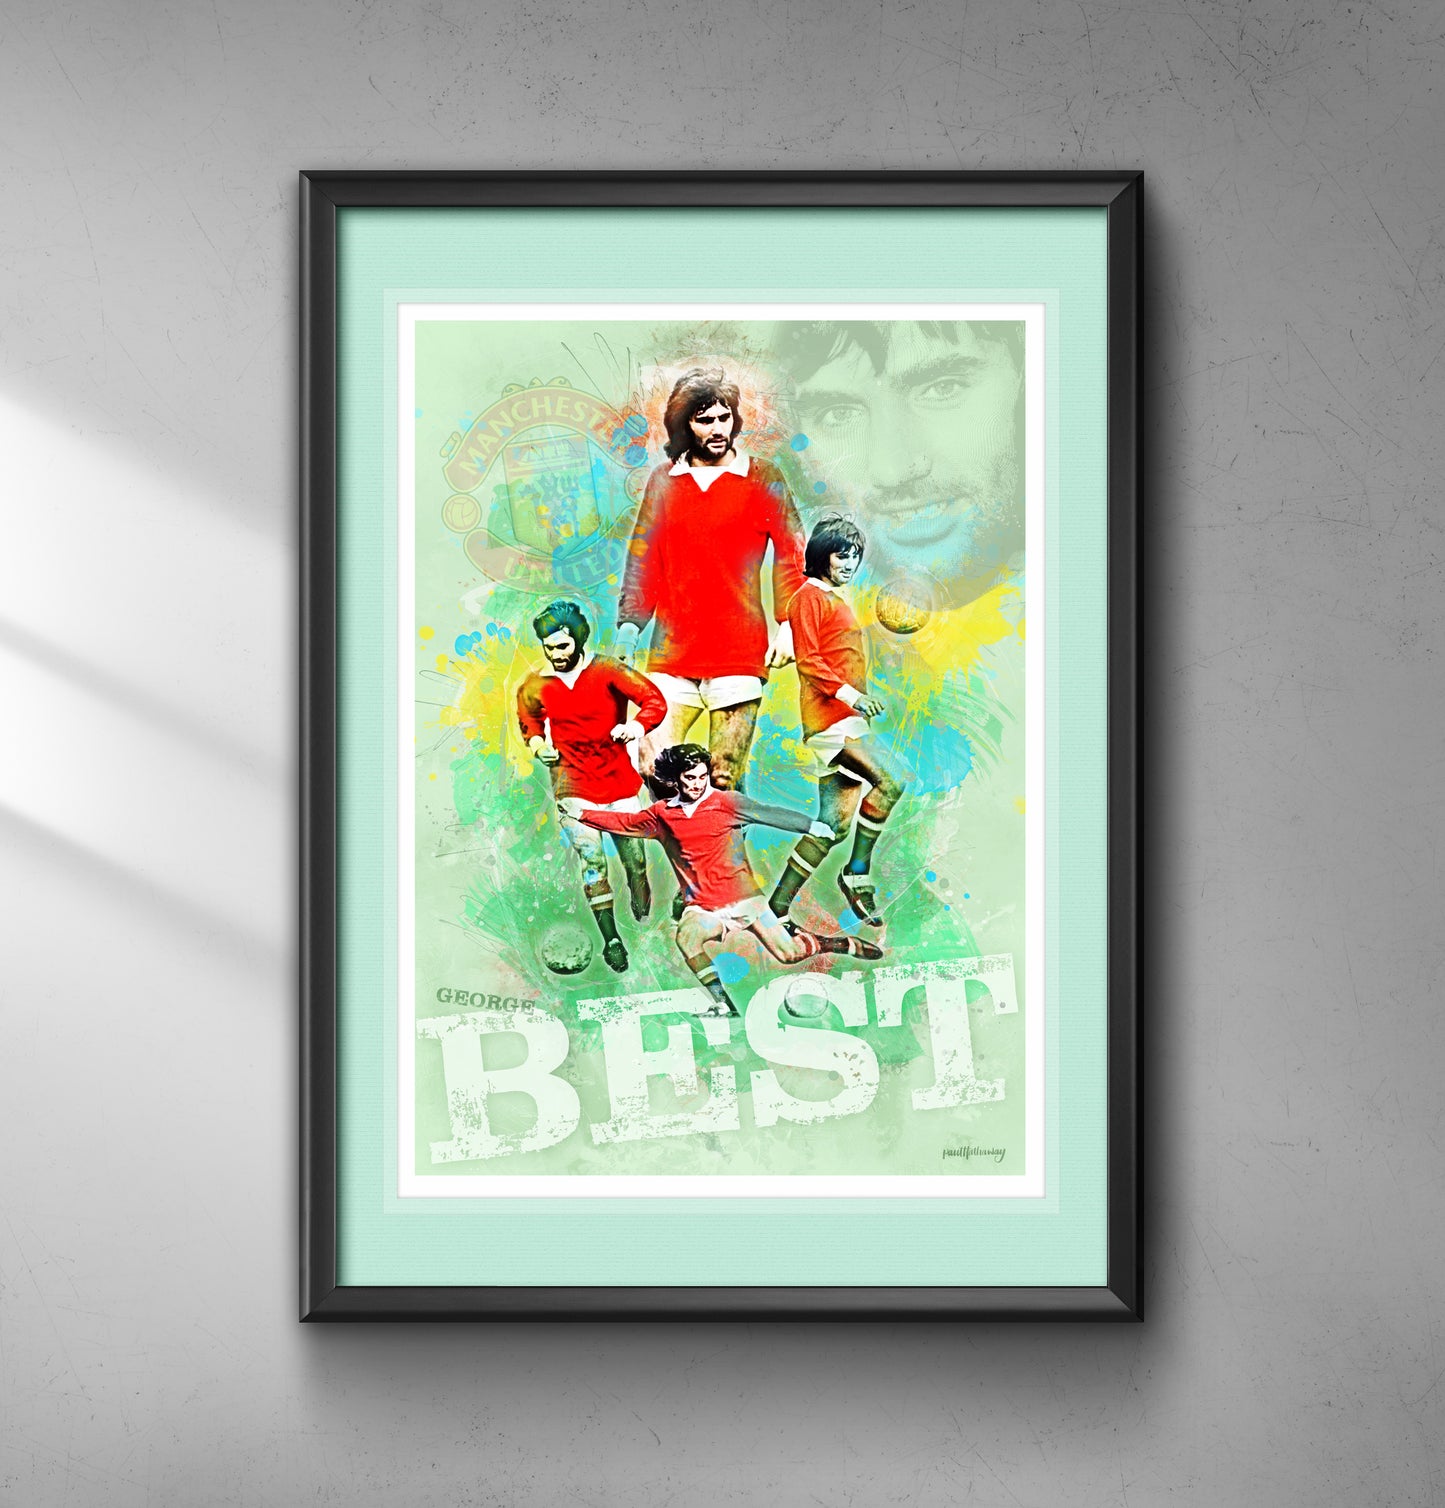 George Best, Man United - Football Art Print - Option 2